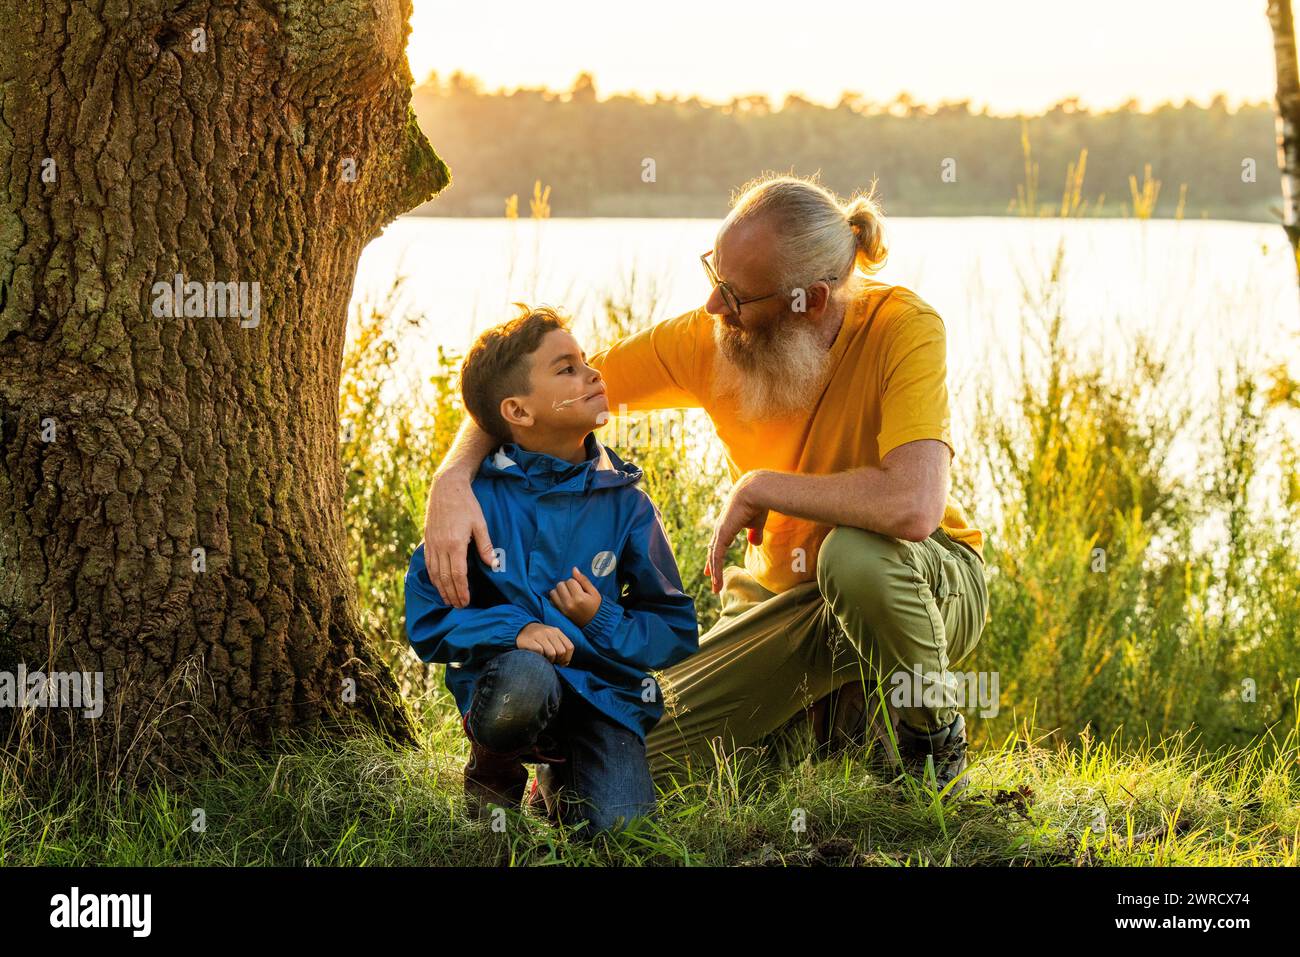 Dieses Bild fängt einen zärtlichen Moment zwischen einem Großvater und seinem Enkel ein, der bei Sonnenuntergang an einem ruhigen Seeufer sitzt. Der ältere Mann, mit weißem Bart, Brille und einem warmen Lächeln, legt seine Hand sanft auf die Schulter des Jungen und vermittelt ein Gefühl von Führung und Zuneigung. Der kleine Junge sieht ihn mit einem Blick der Bewunderung und des Vertrauens an. Sie sind von einem großen Baum eingerahmt, und die sanfte Hintergrundbeleuchtung der untergehenden Sonne schafft eine ruhige und warme Atmosphäre, die diesen intimen Familienmoment unterstreicht. Zärtlicher Moment zwischen Großvater und Enkel am See. Hochwertige Fotos Stockfoto